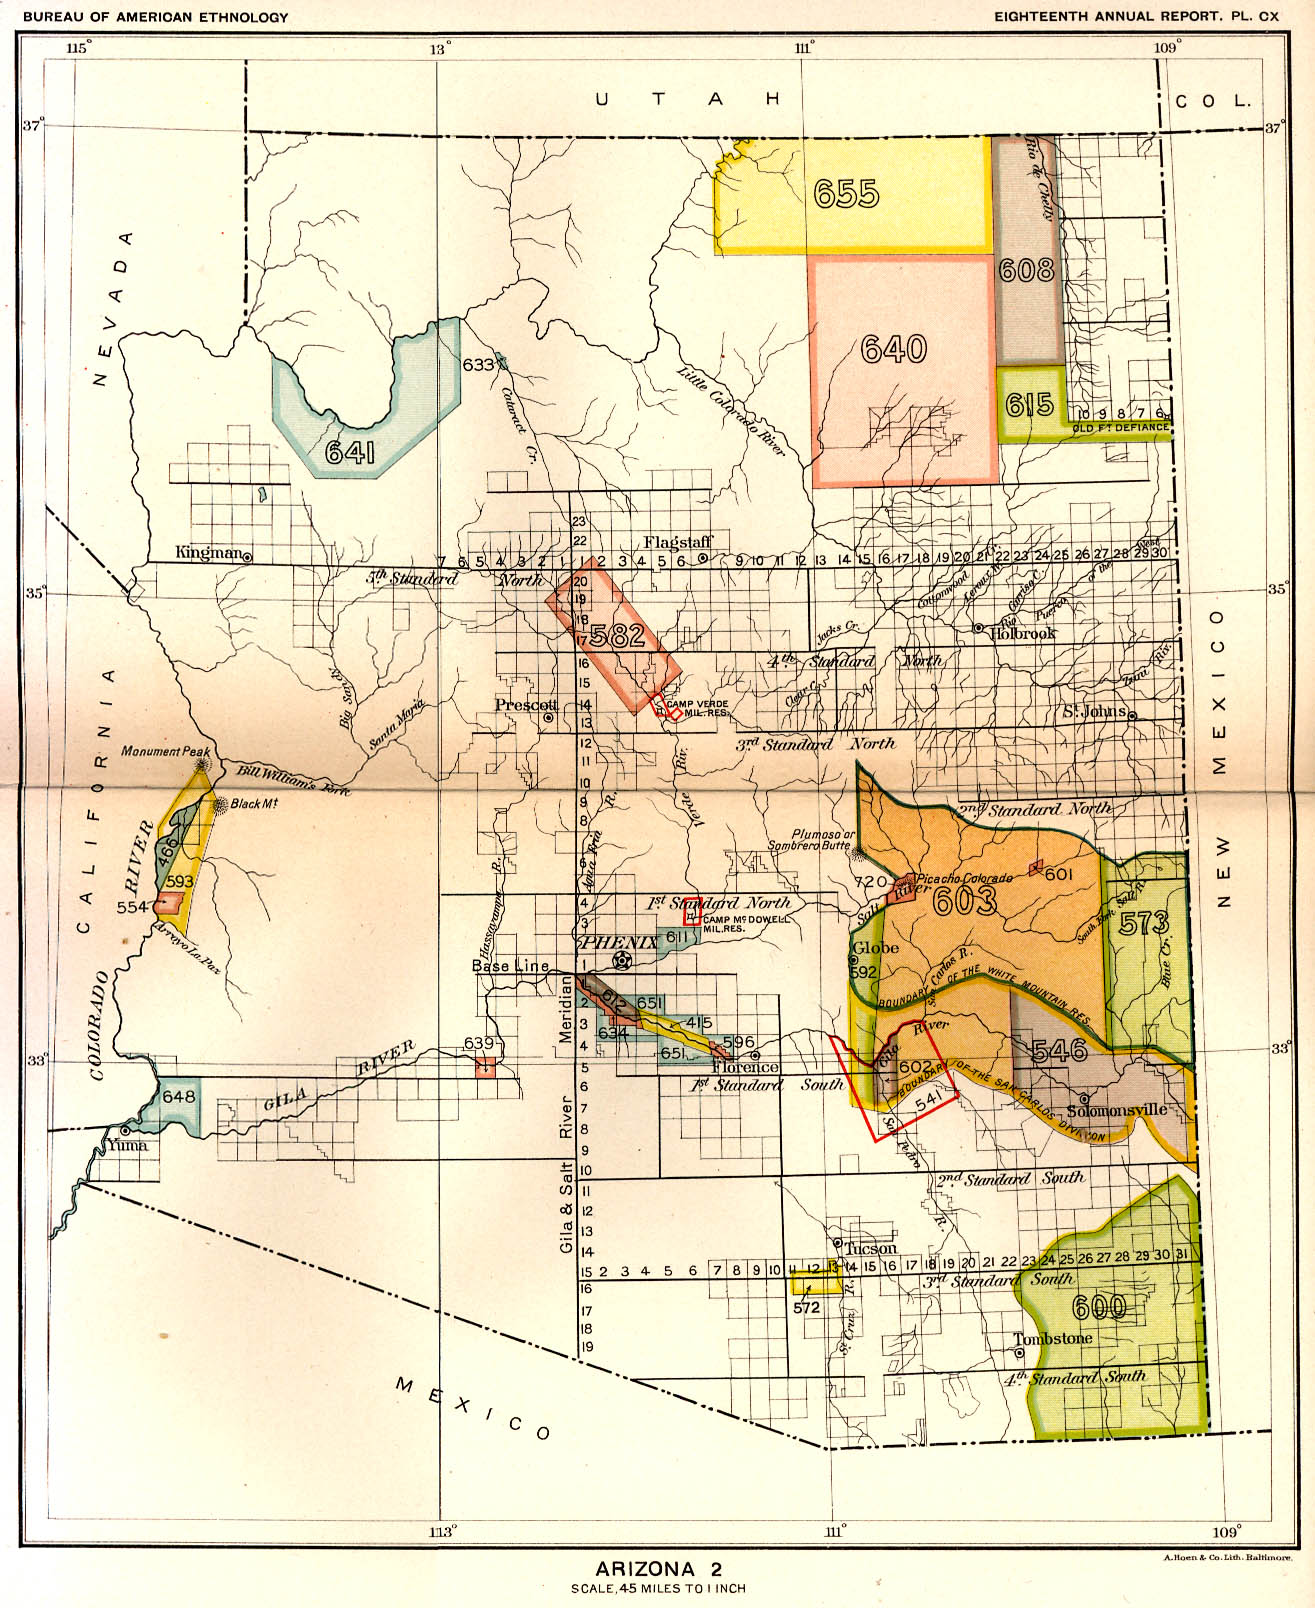 Arizona 2, Map 4